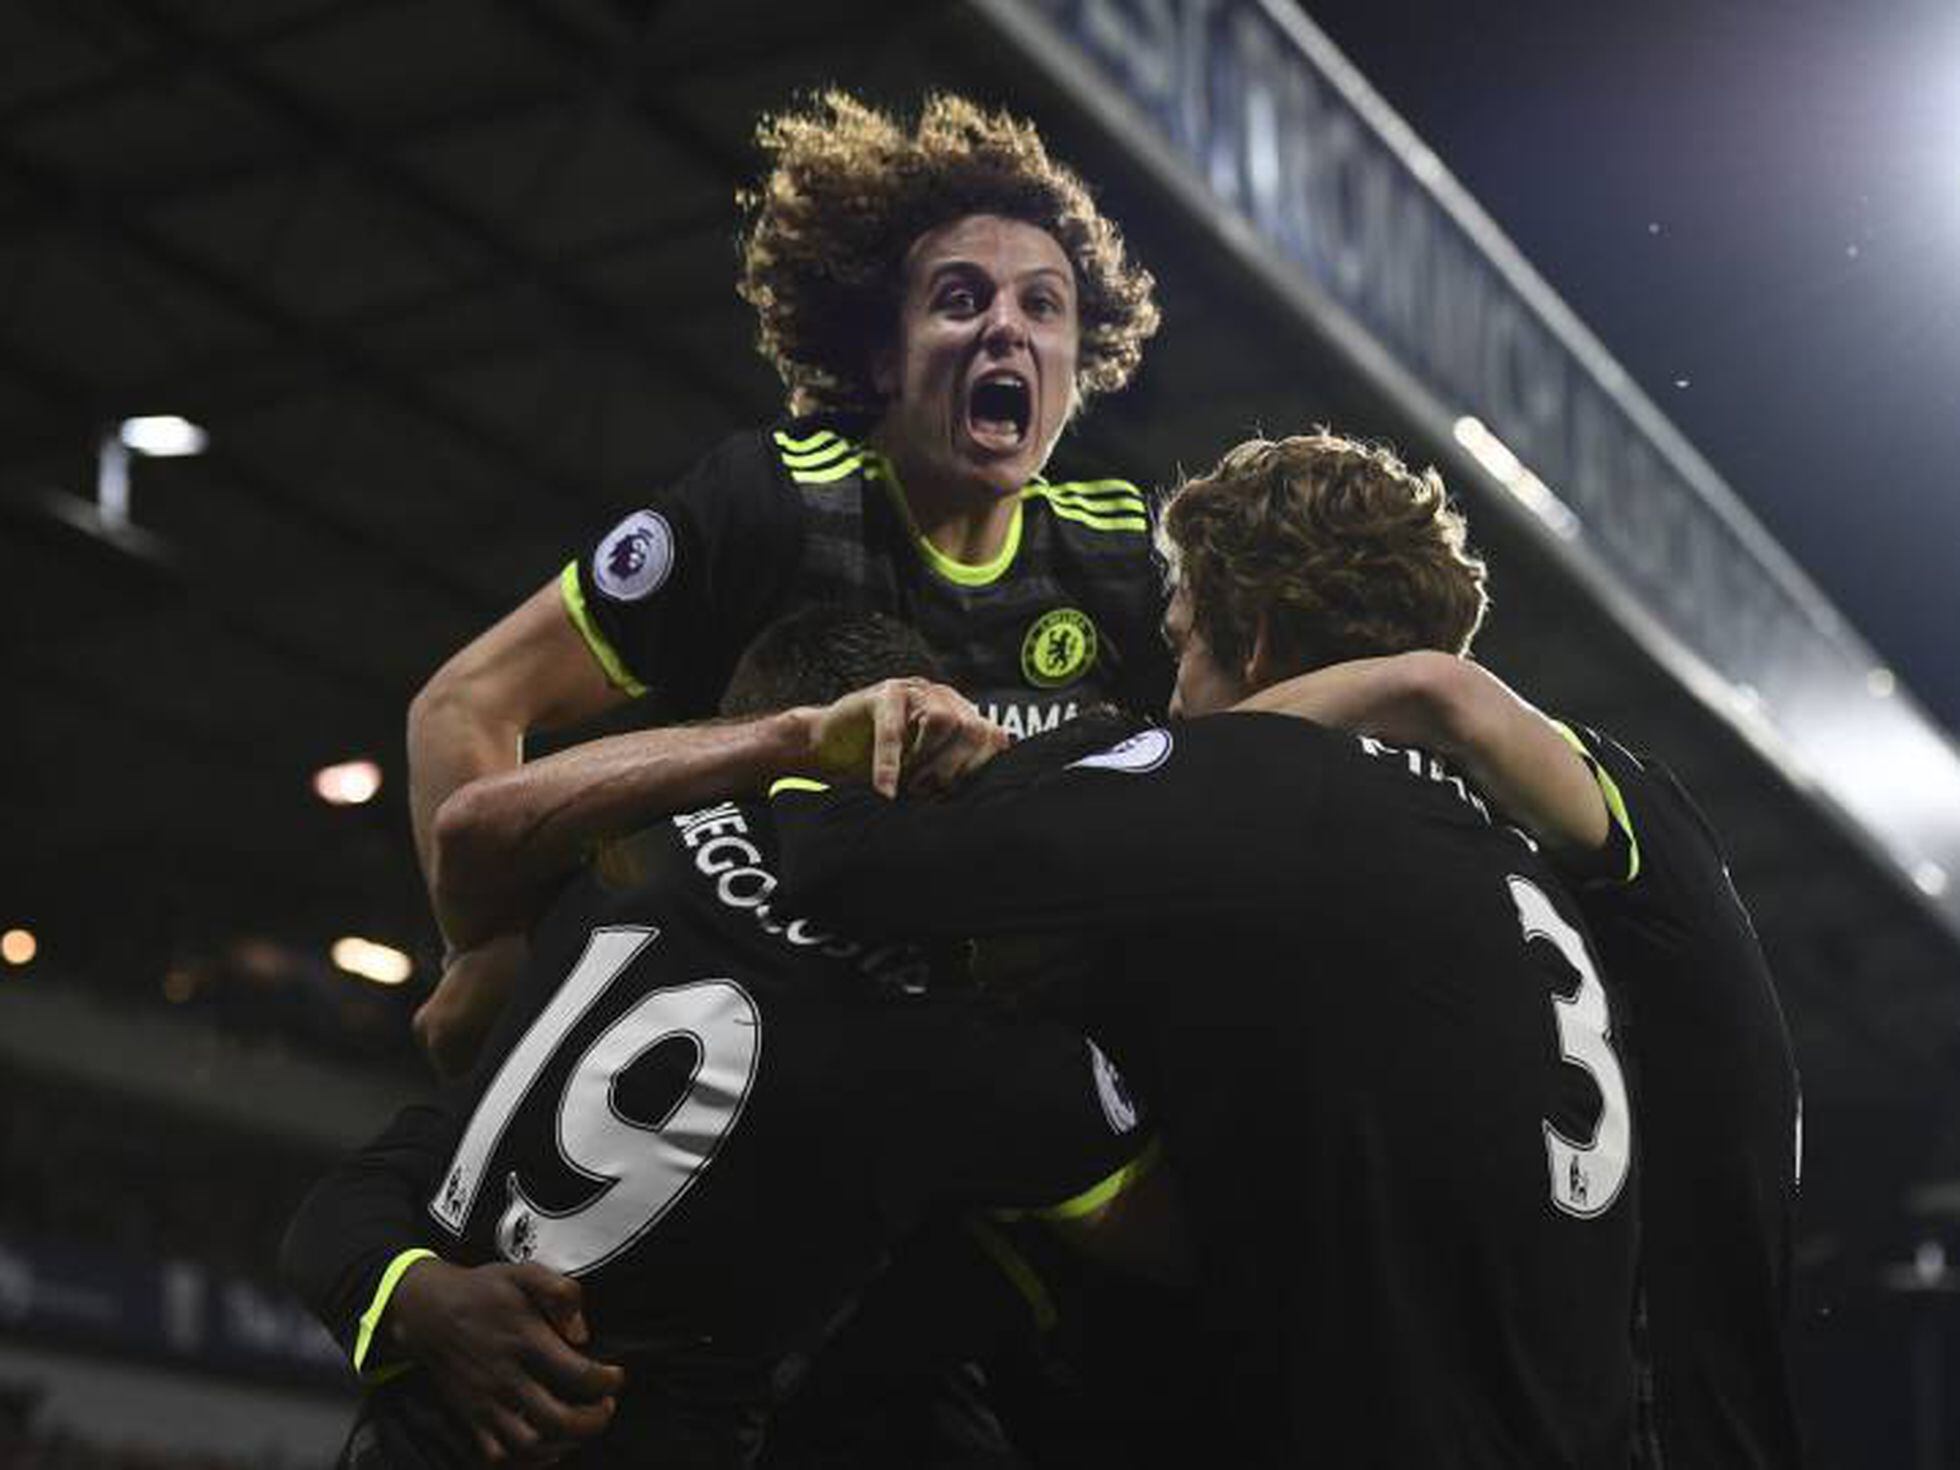 Chelsea campeão: veja as imagens da vitória do time inglês sobre o